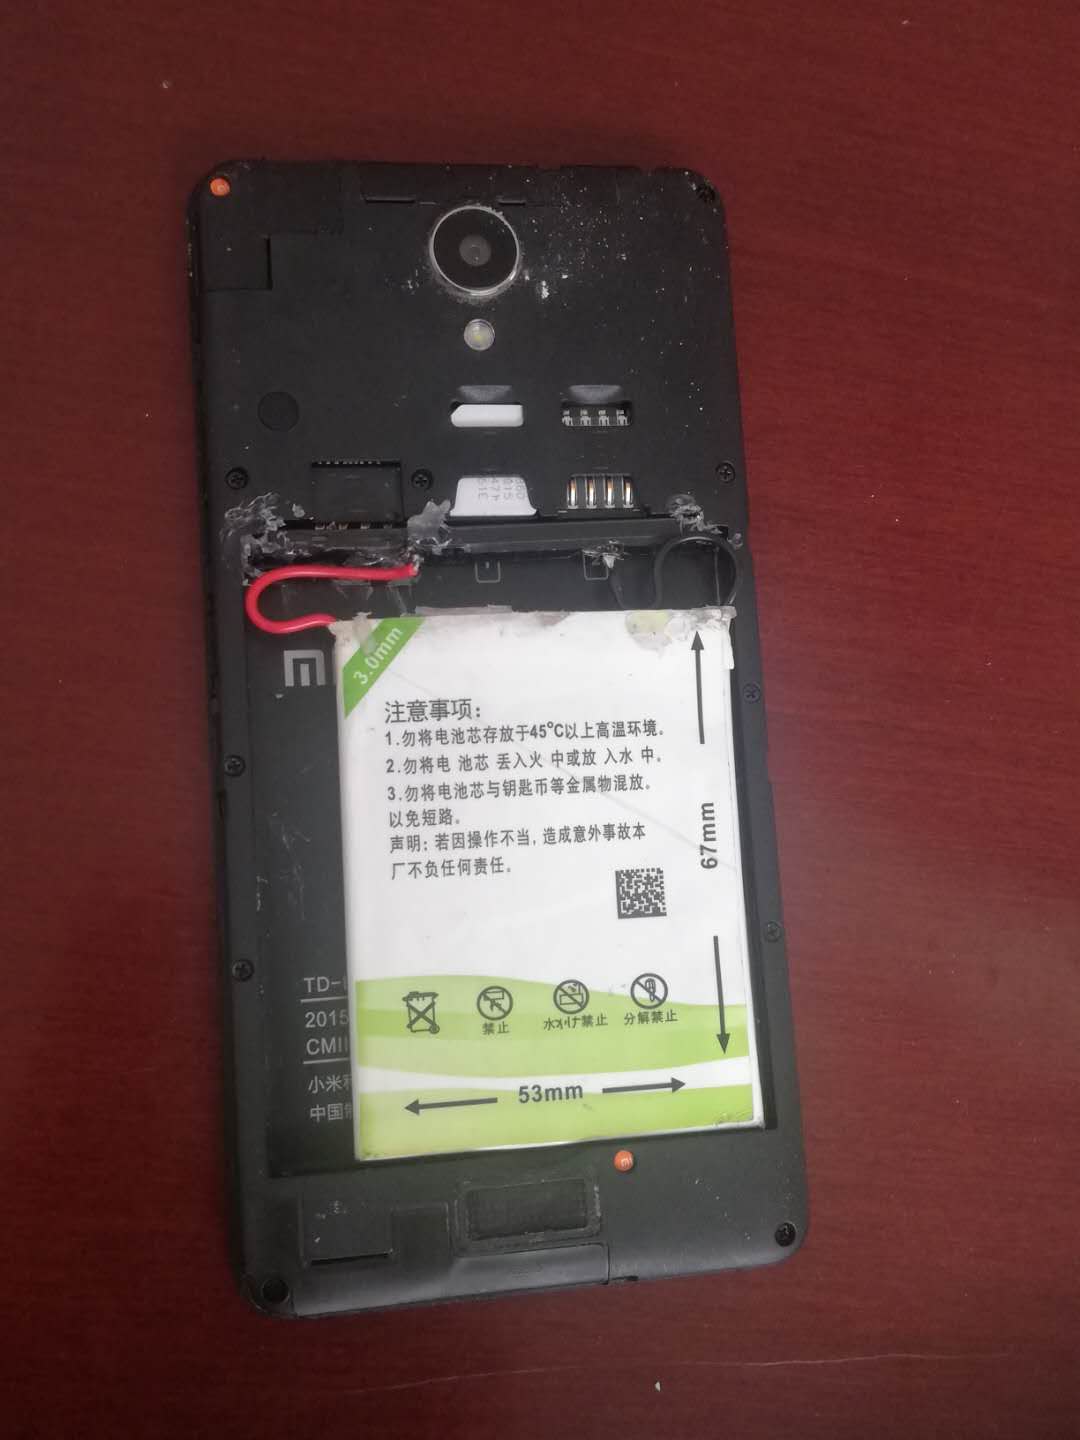 改装红米note2手机电池成功 - 电子制作DIY